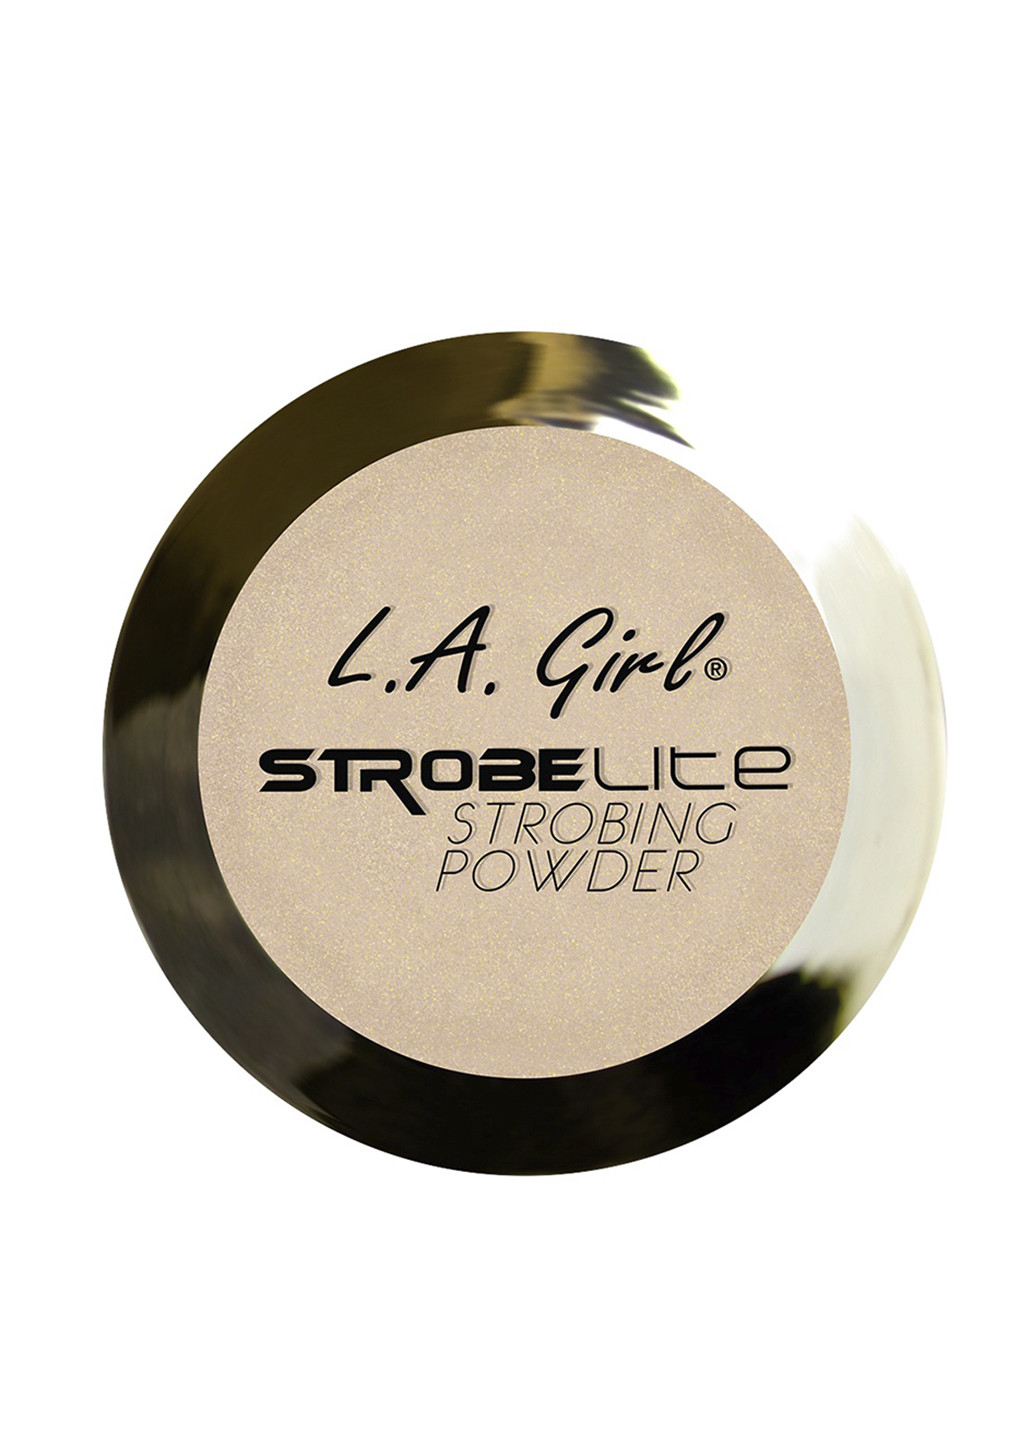 Пудра для стробинга Strobe Lite Strobing Powder 110 Watt, 5 г L.A. Girl (72560793)